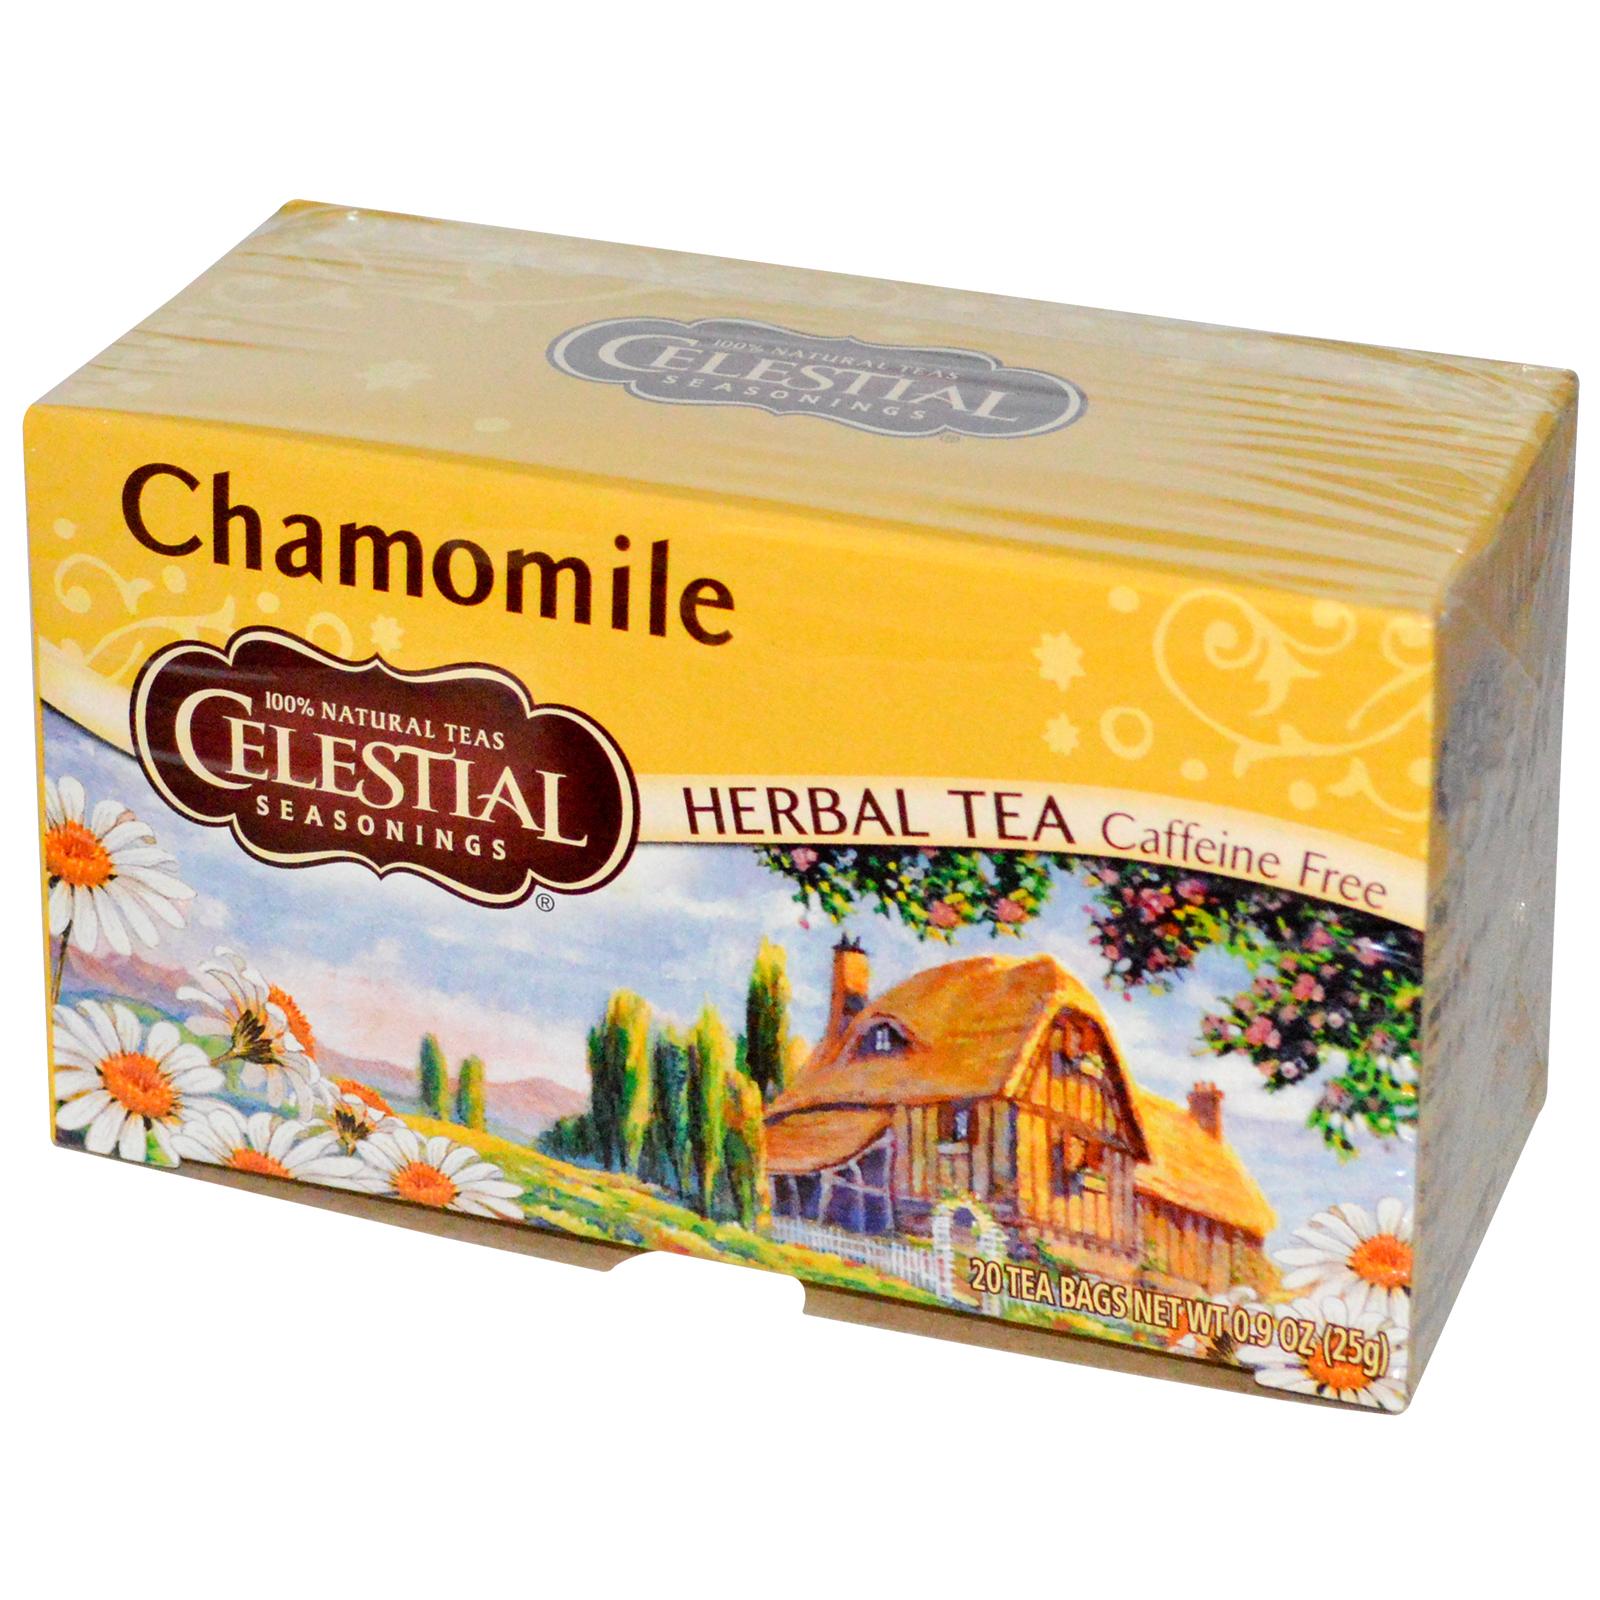 Celestial Seasonings Herbal Tea Caffeine Free Chamomile